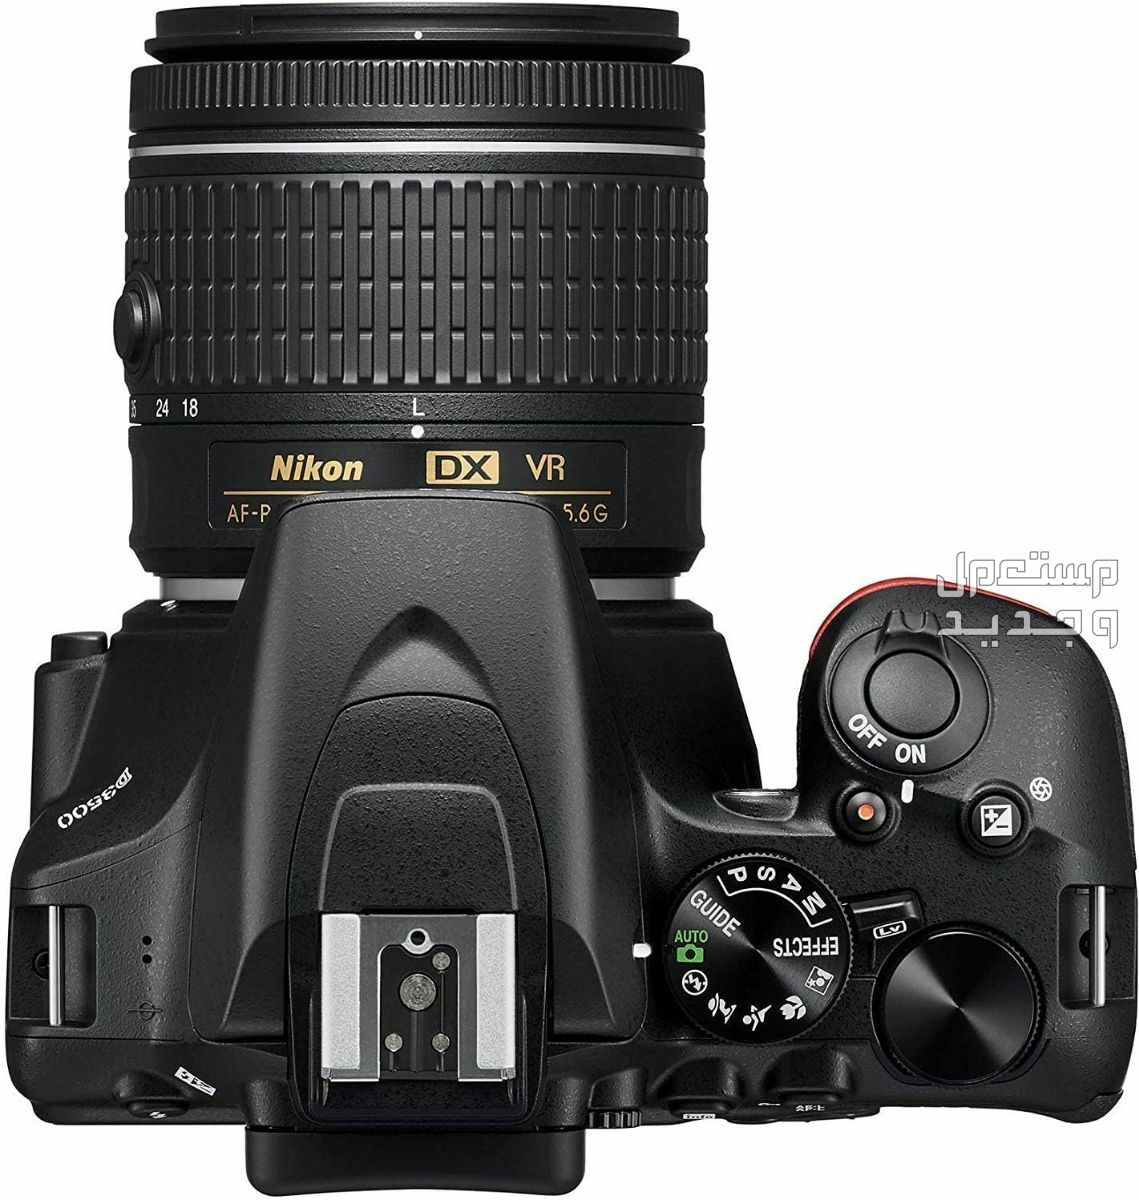 10 كاميرات تصوير ماركات عالمية بأسعار رخيصة في جيبوتي سعر كاميرا Nikon D3500